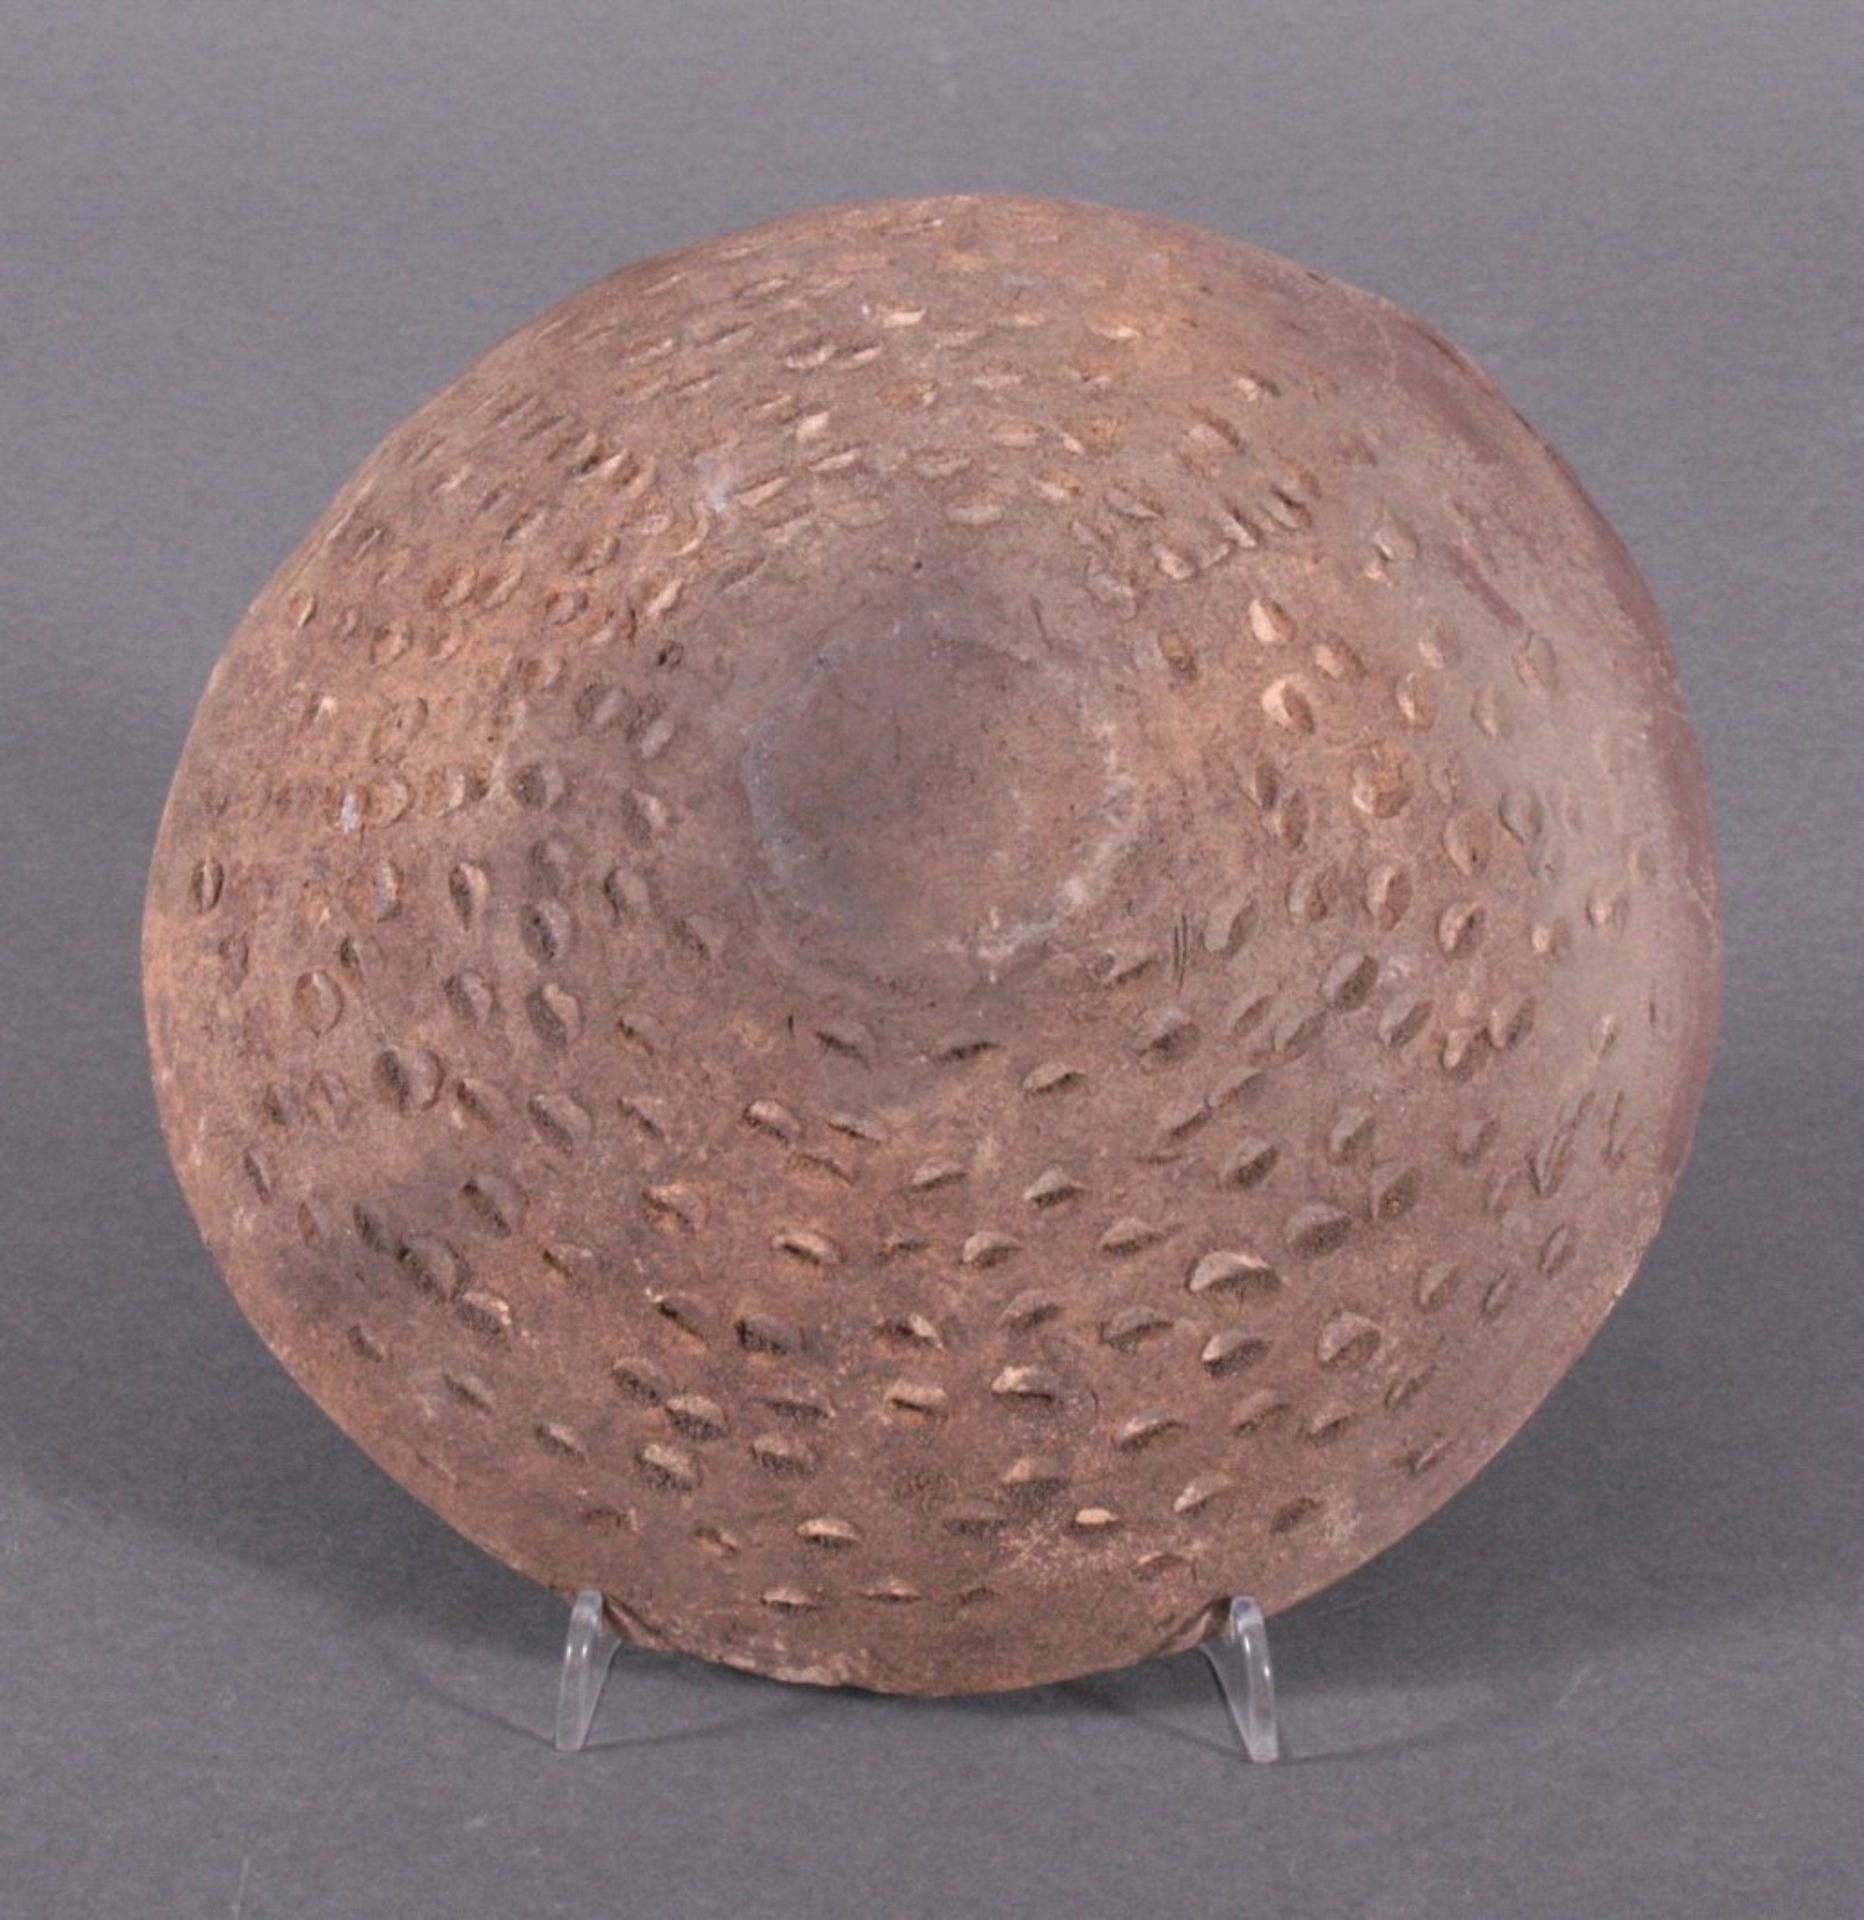 Runde Schale, Lausitzer Kultur - 900- 500 v. Chr.heller Ton, gezipfelter Rand, Rückseite - Bild 3 aus 3